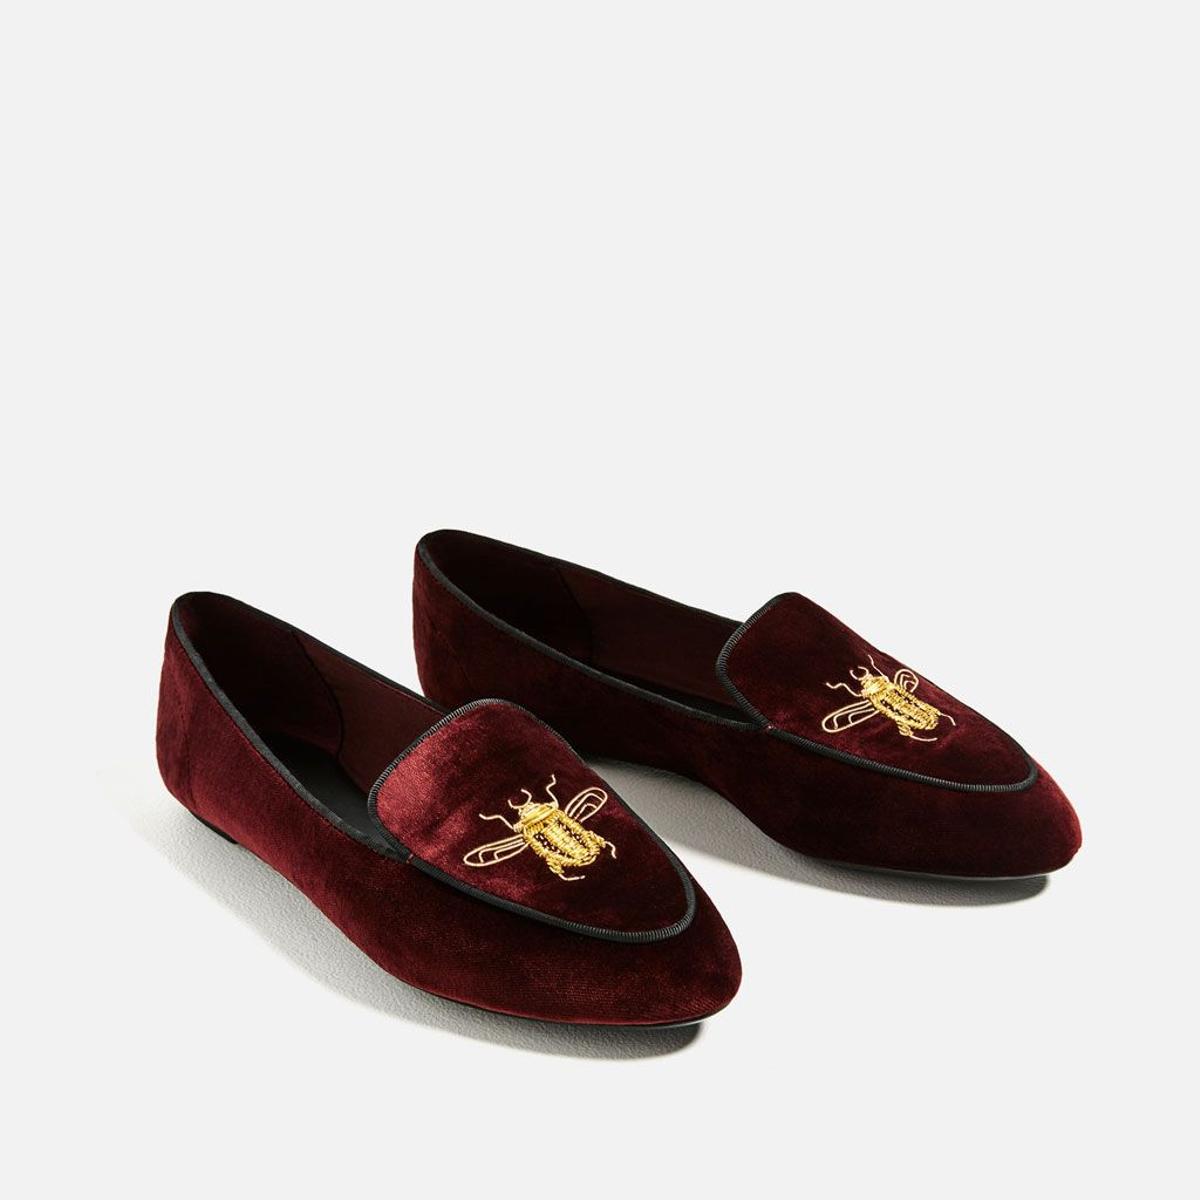 Los zapatos rojos del otoño: zapato con terciopelo bordado